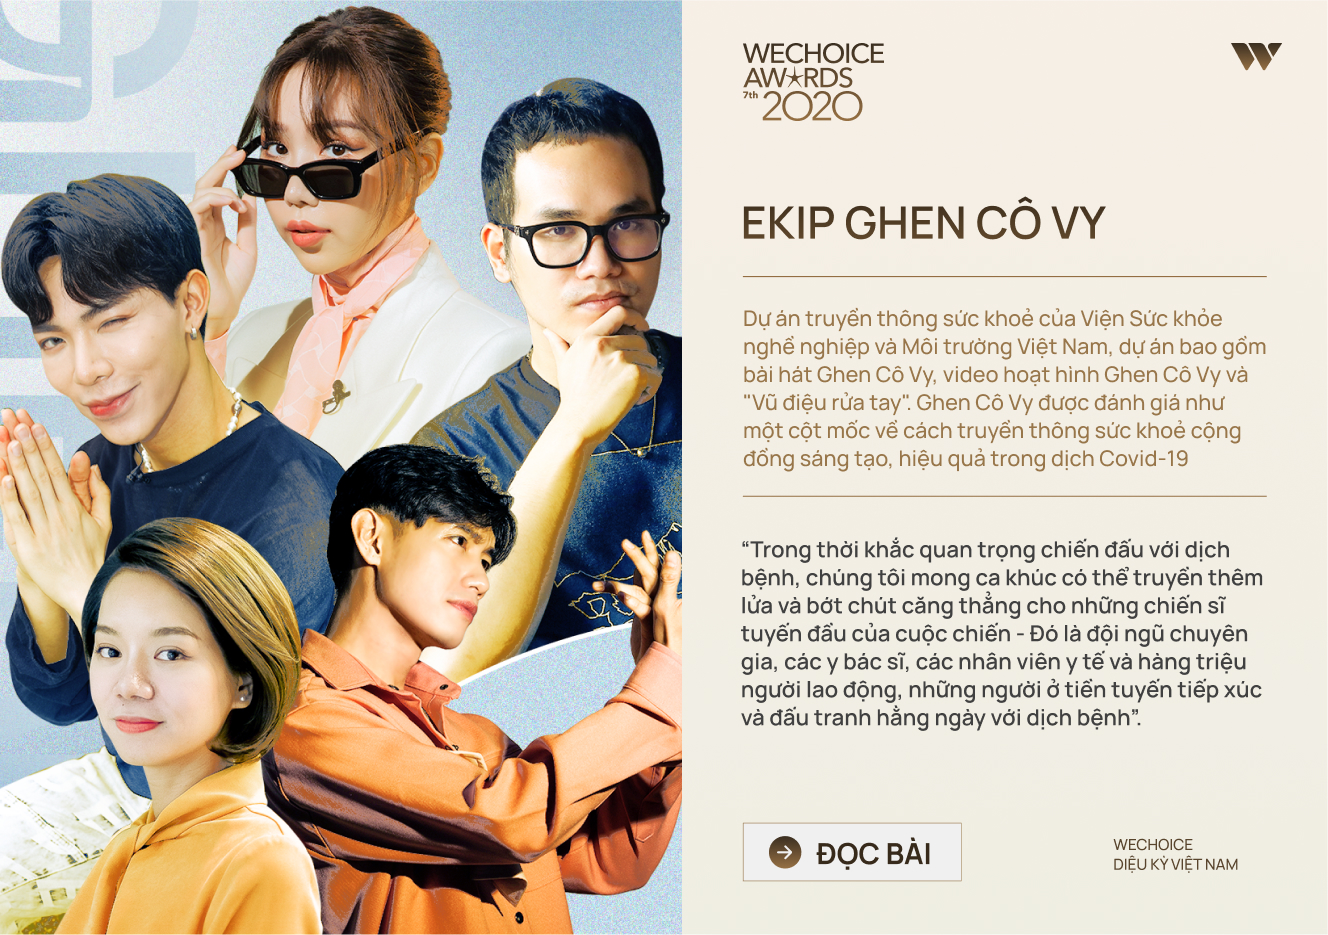 20 đề cử nhân vật truyền cảm hứng của WeChoice Awards 2020: Những câu chuyện tạo nên Diệu kỳ Việt Nam - Ảnh 6.